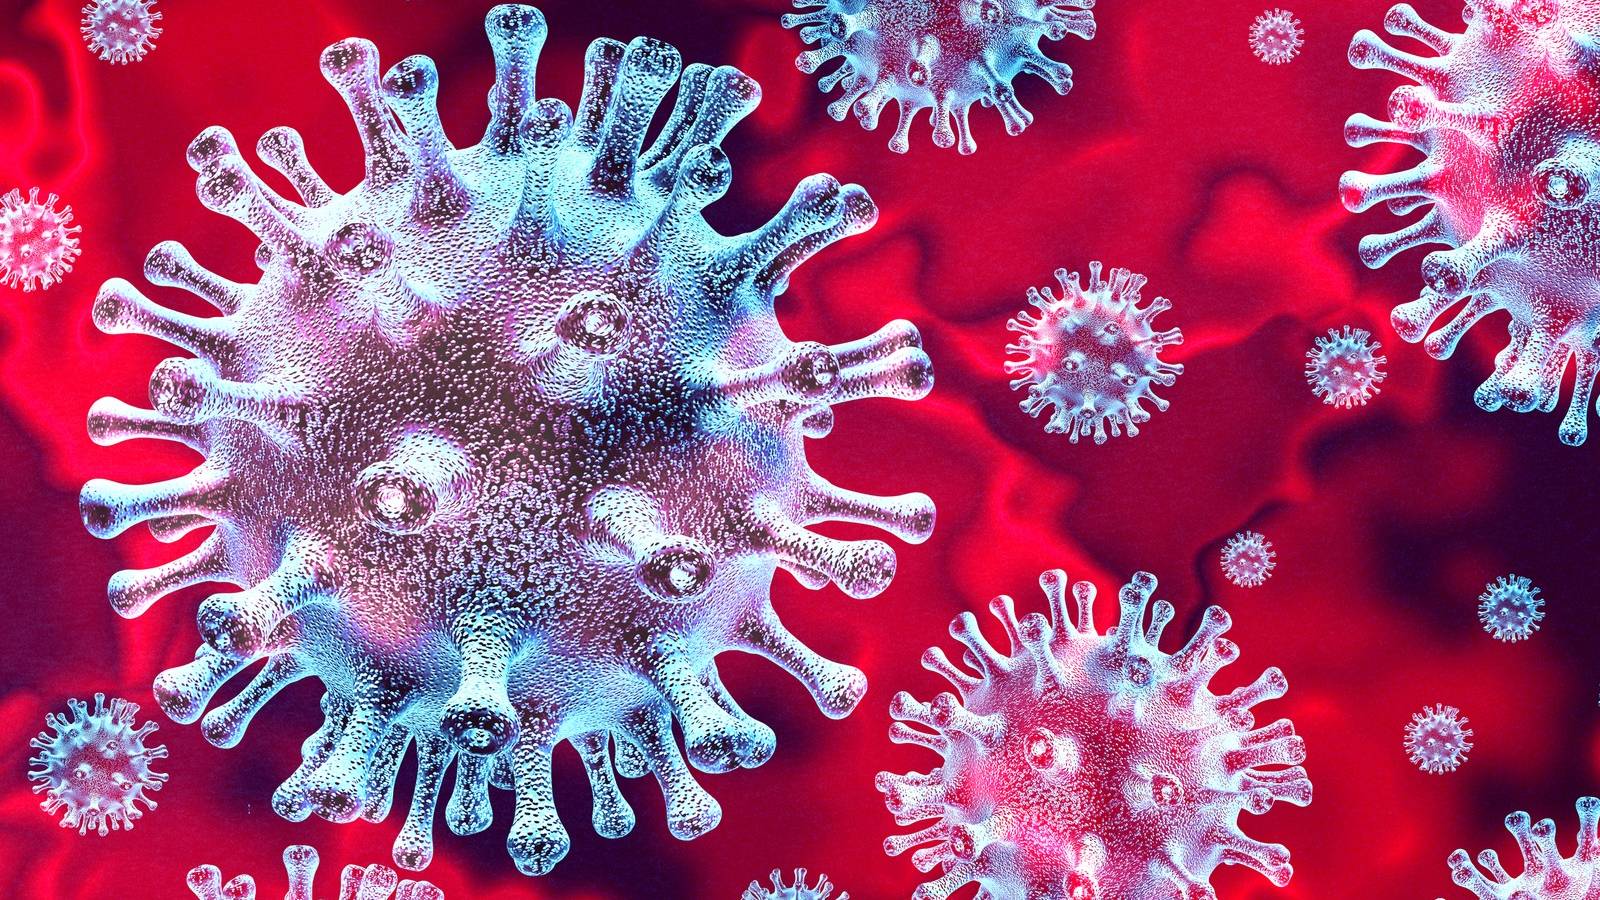 Coronavirus Romania solicitare urgenta